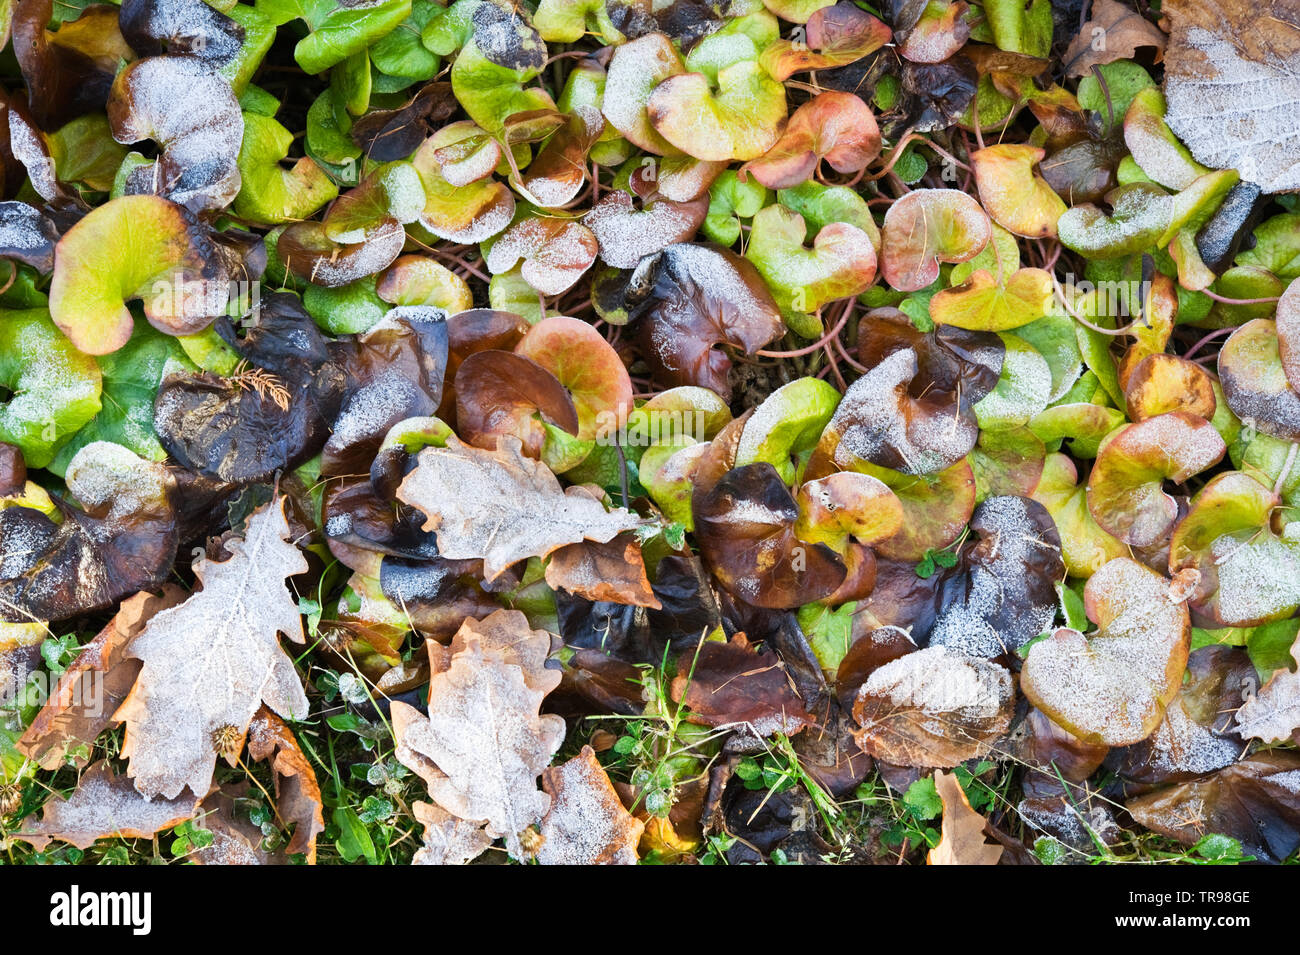 Le gingembre sauvage européenne (Asarum europaeum) et feuilles de chêne recouvert de givre. Banque D'Images